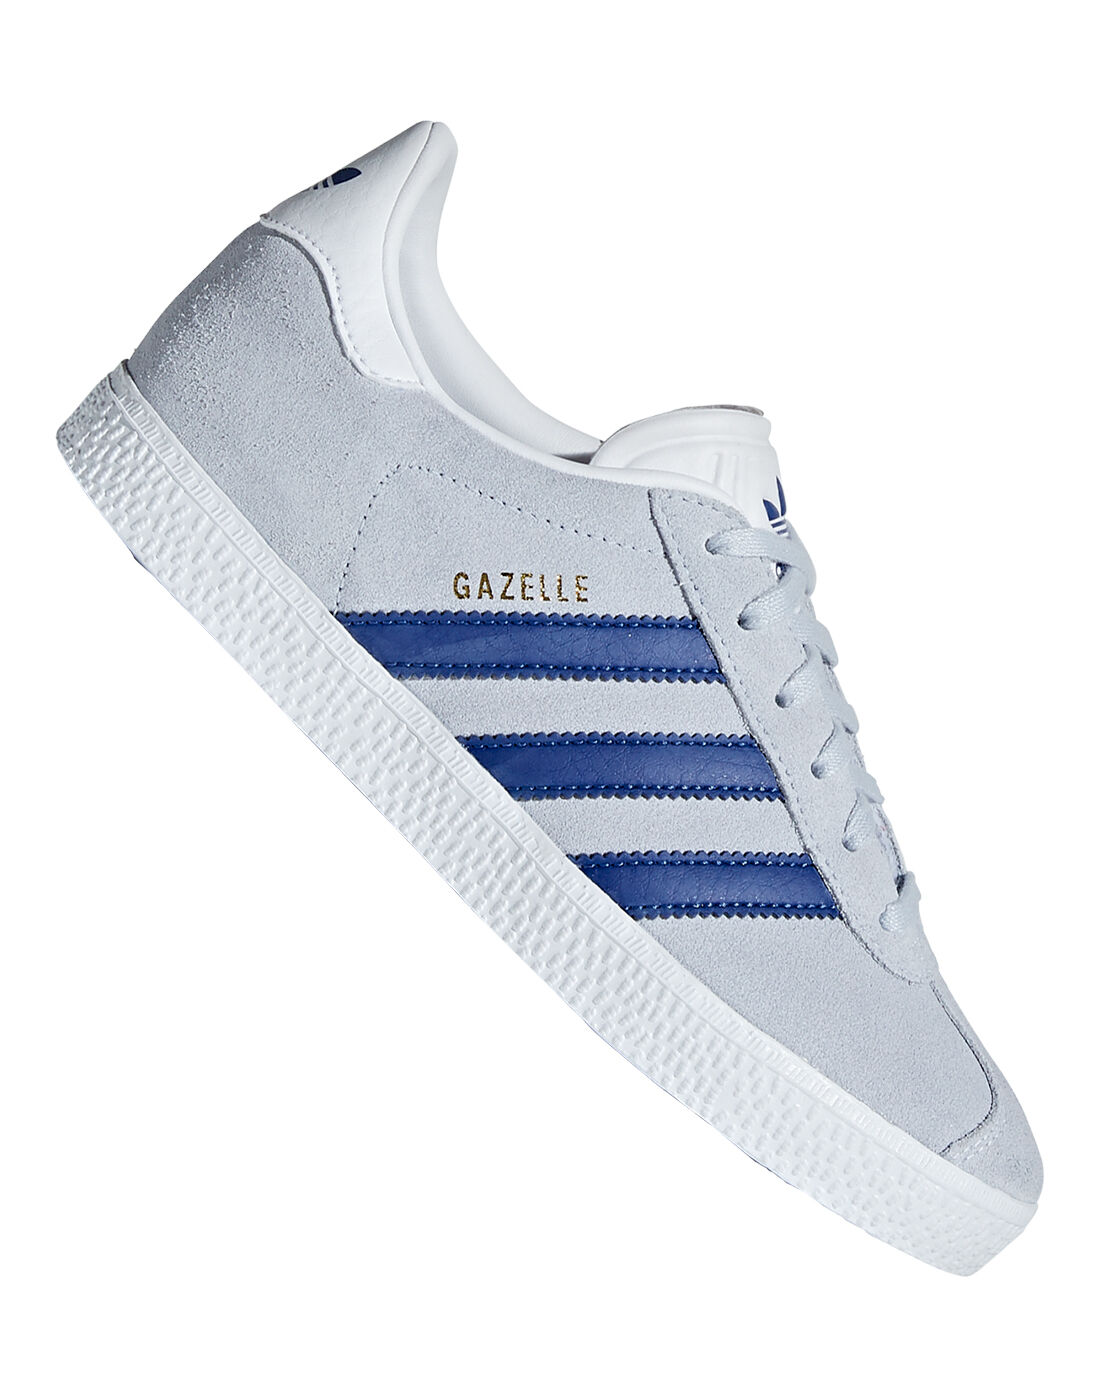 adidas gazelle grey blue